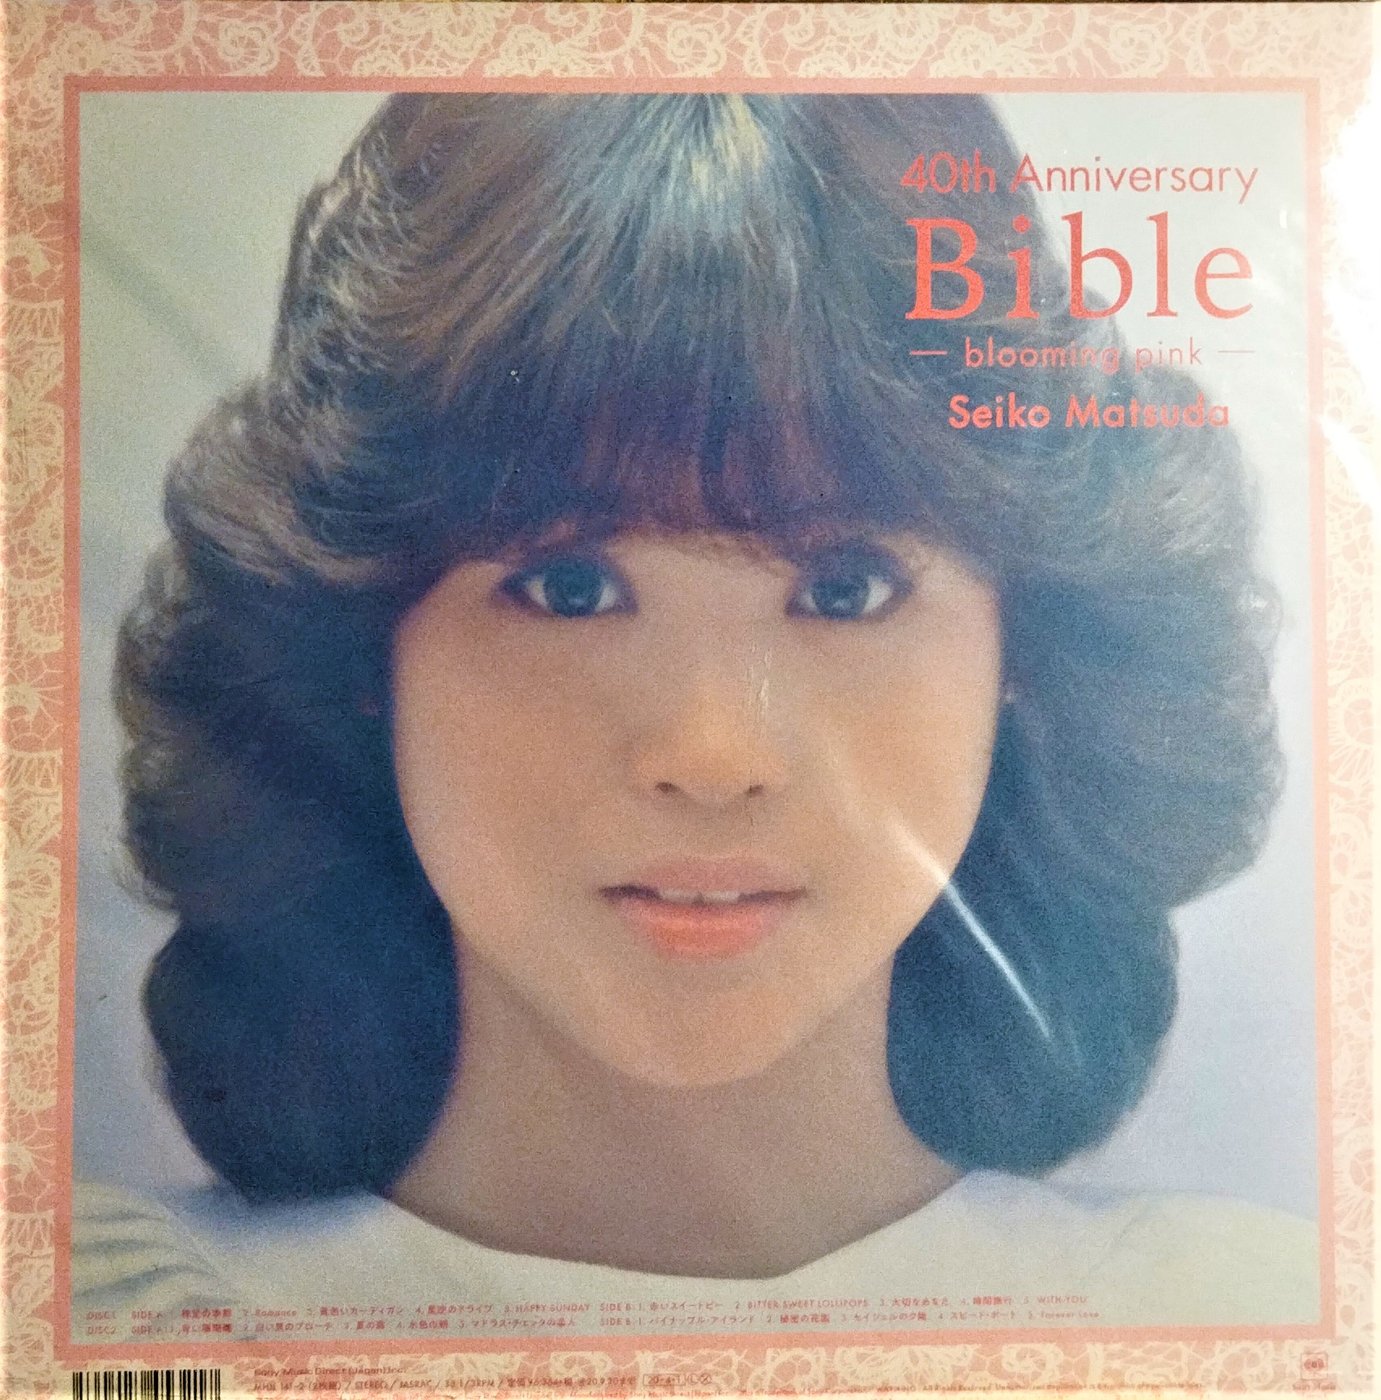 松田聖子 - Seiko Matsuda 40th Anniversary Bible -blooming pink全新